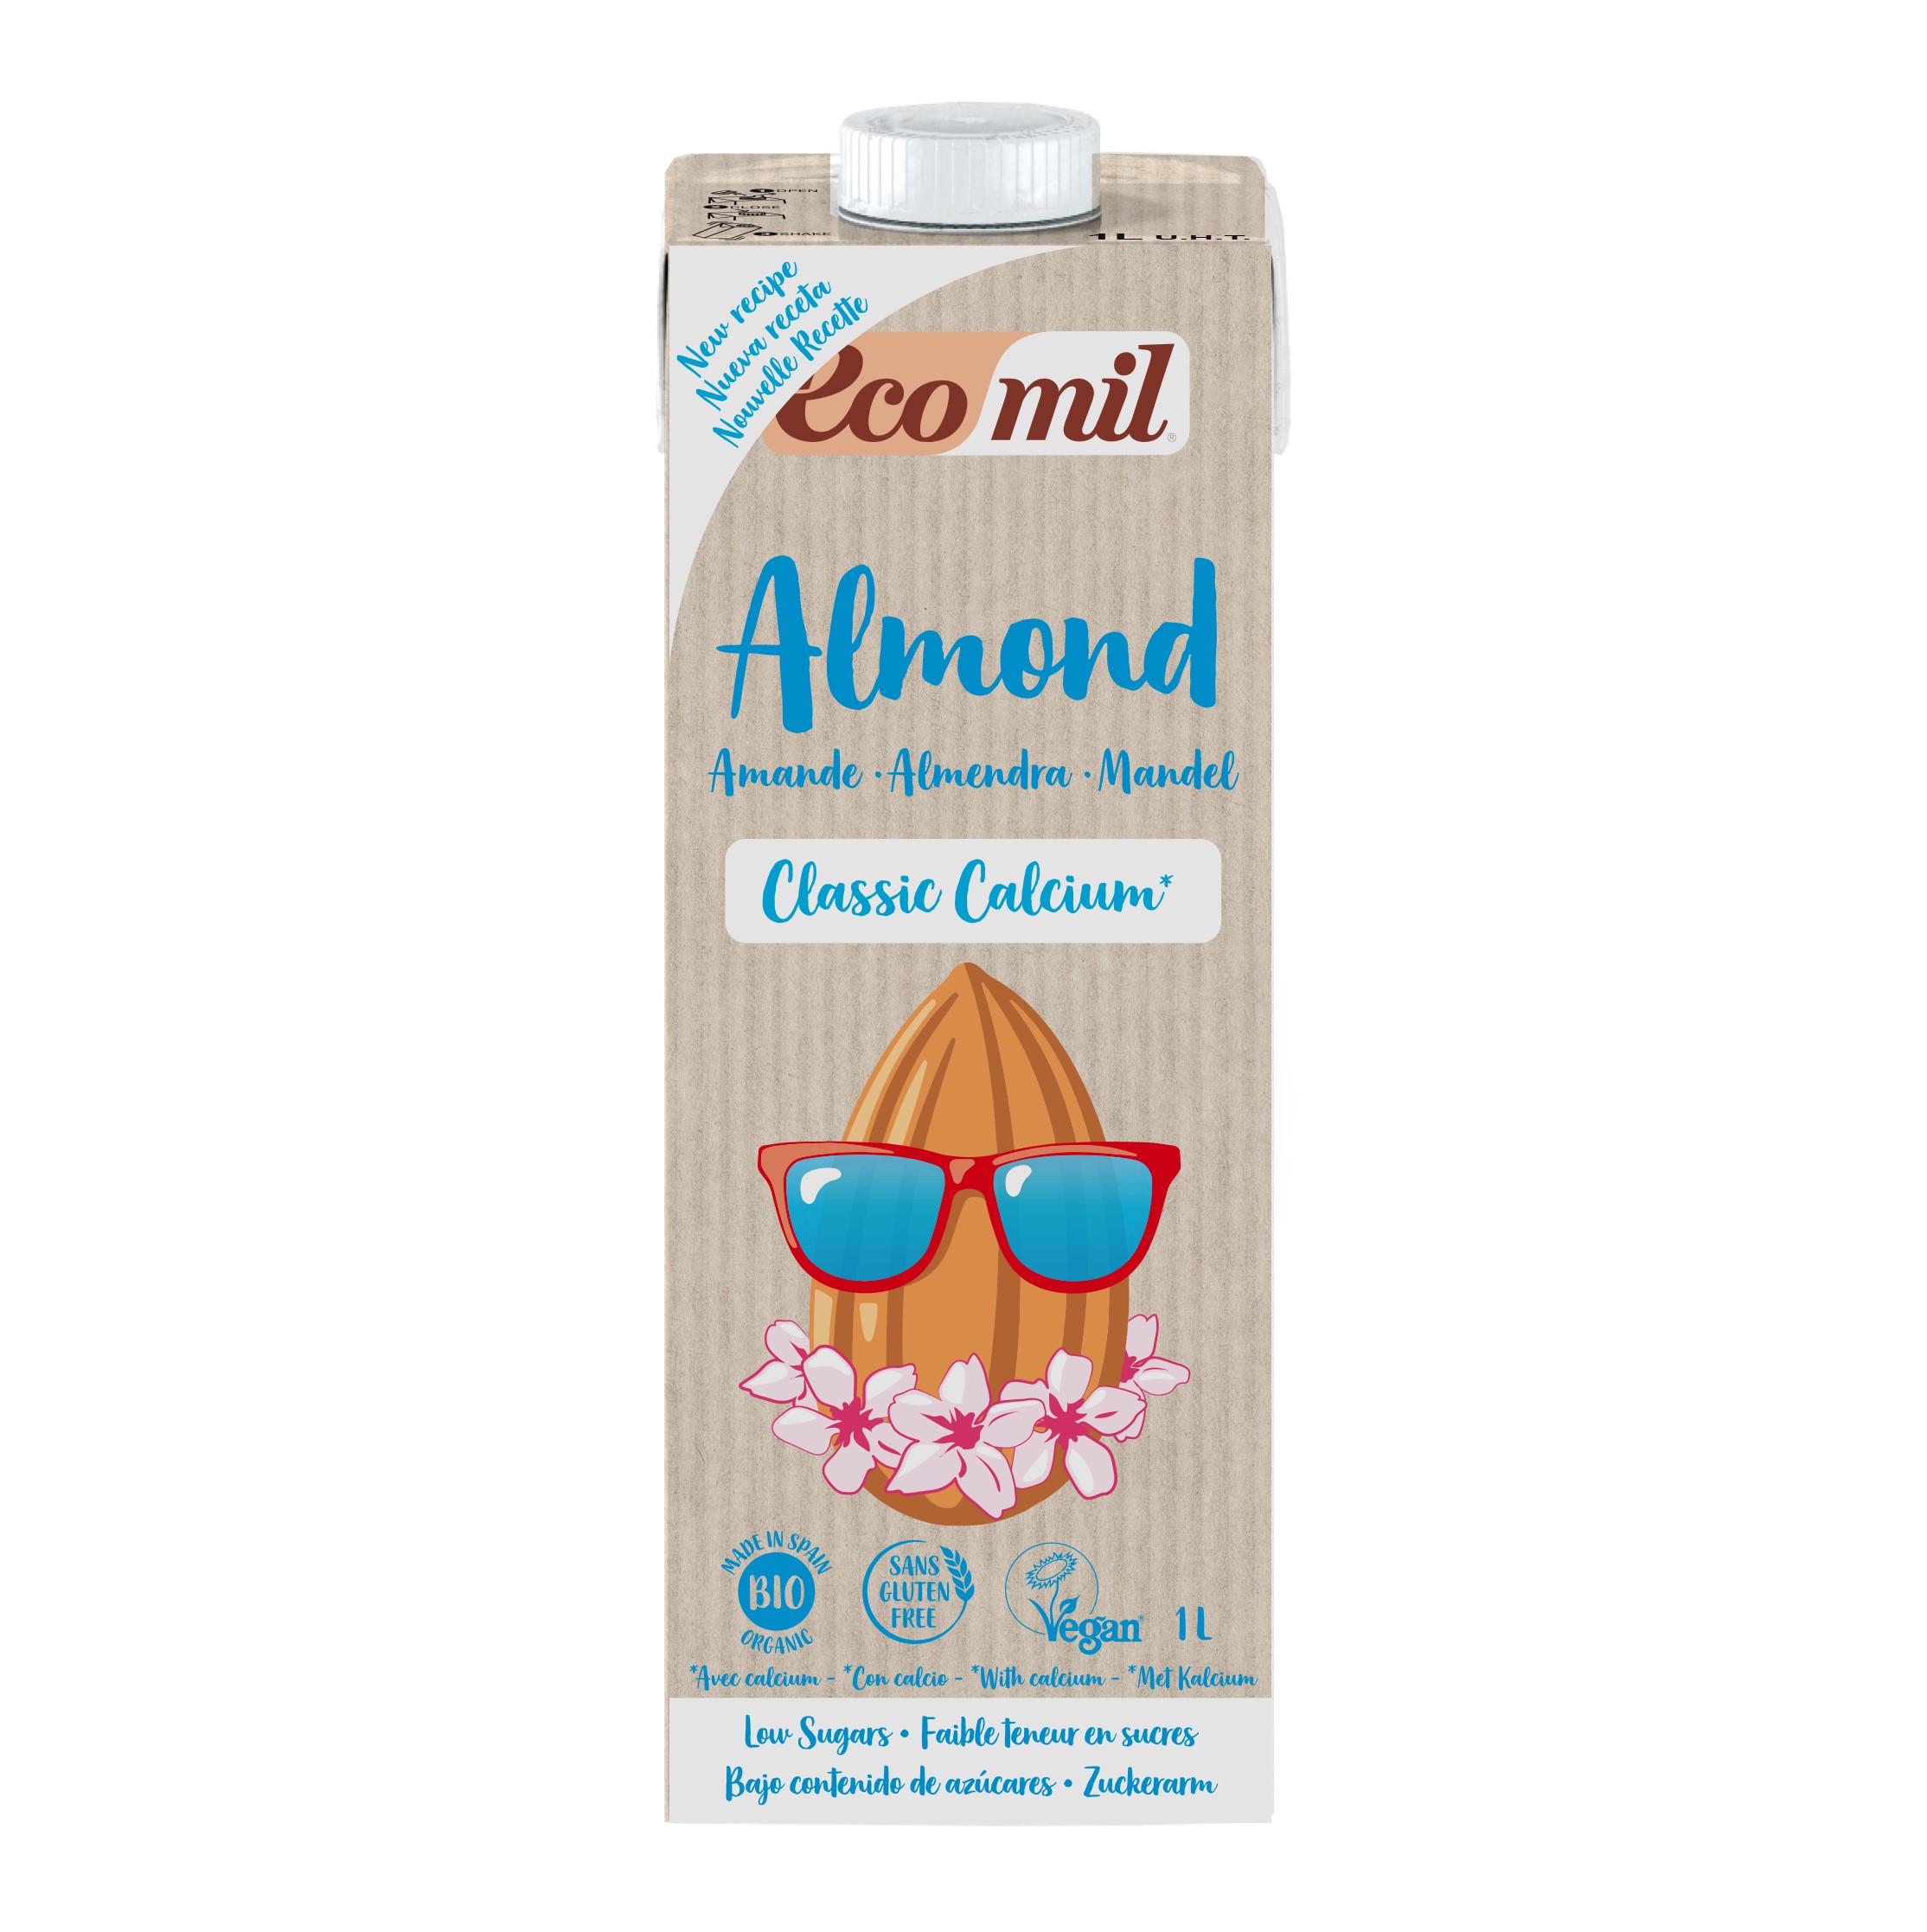 Sữa Hạt Hạnh Nhân Nguyên Chất Calcium Hữu Cơ Ecomil (1L)